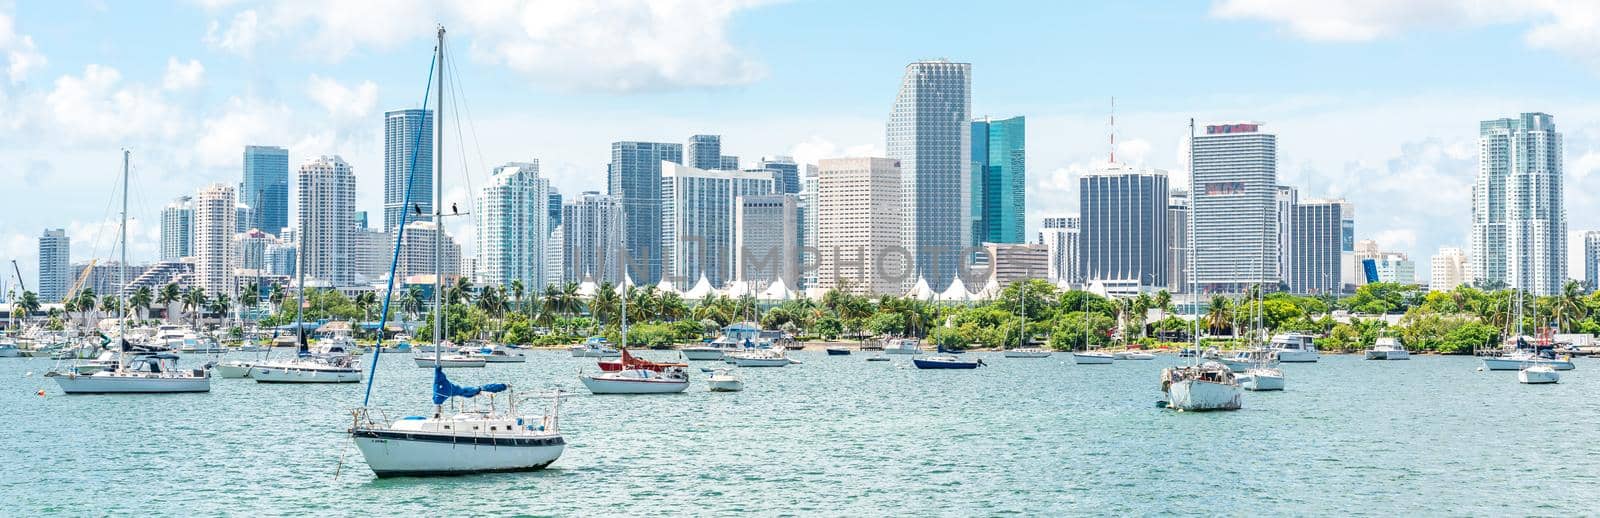 Miami, USA - September 11, 2019: Miami skyline with many yachts and boats